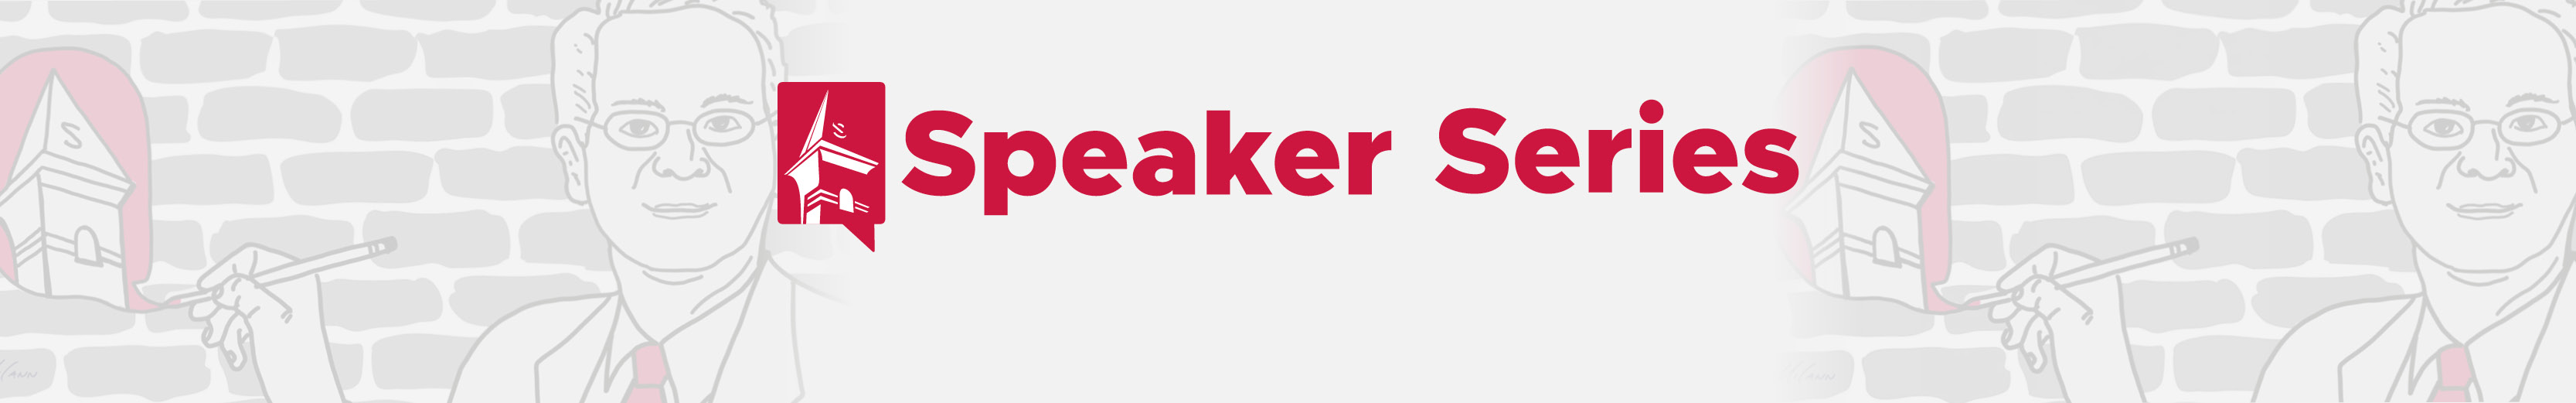 Speaker Series logo